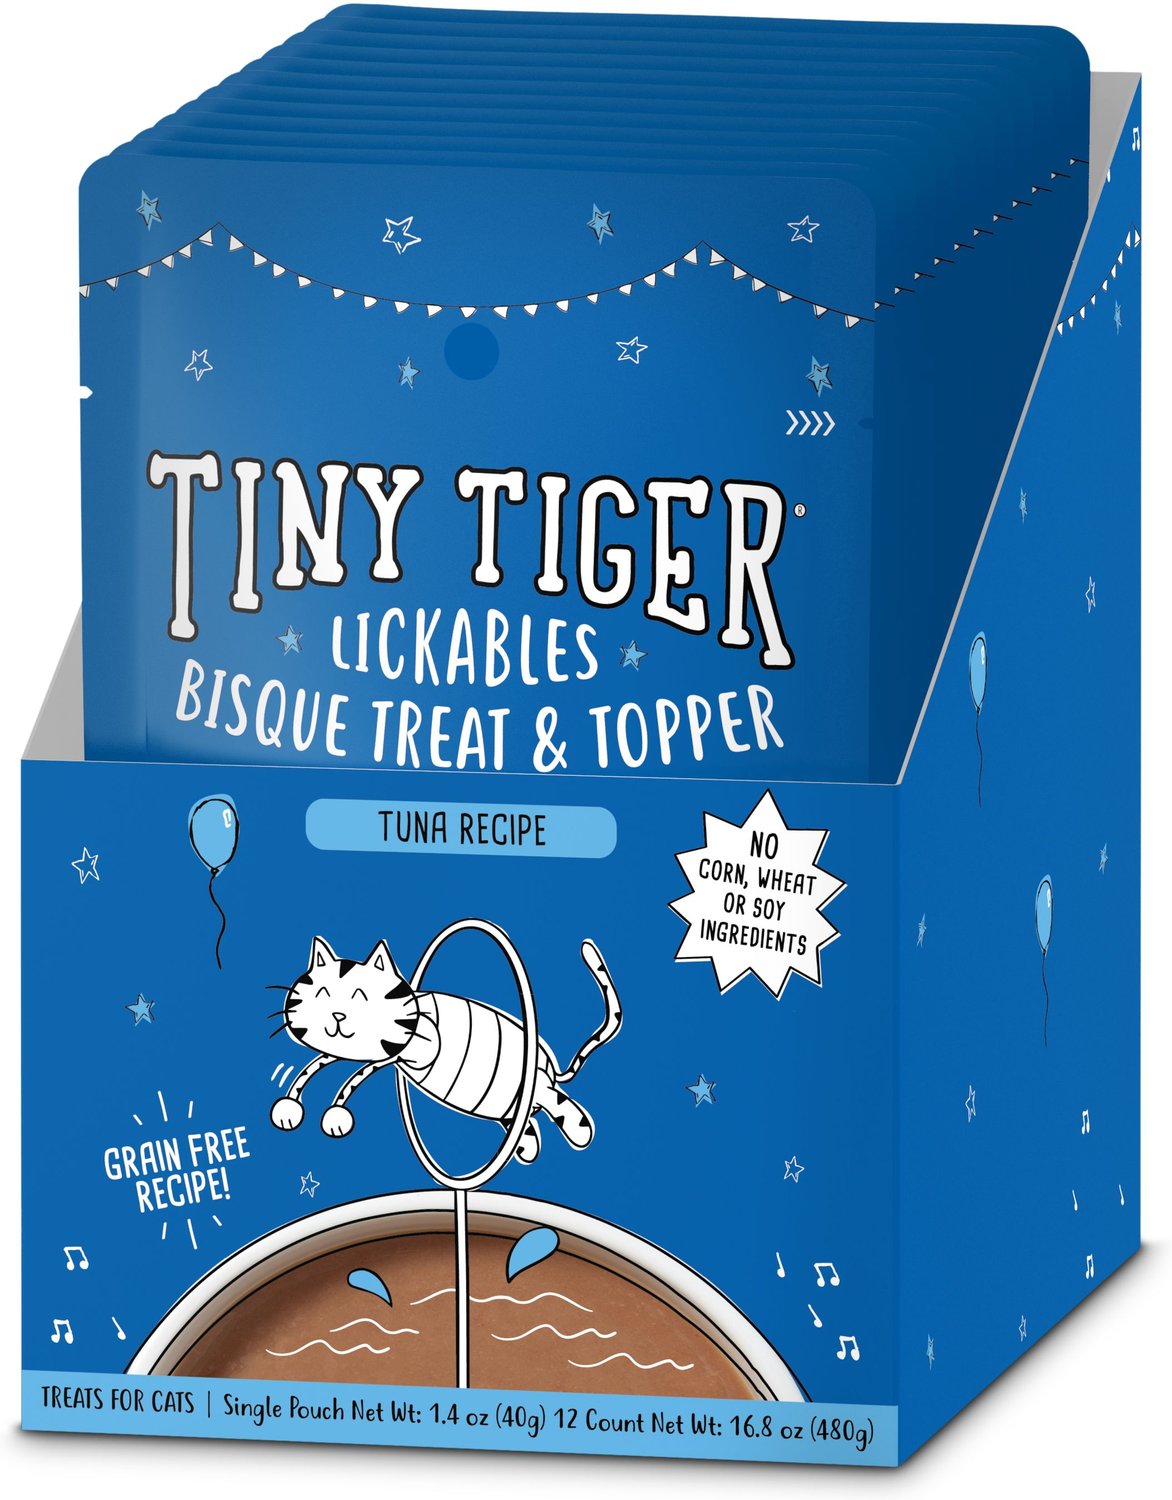 Tiny Tiger Lickables, Tuna Recipe, Bisque Cat Treat & Topper